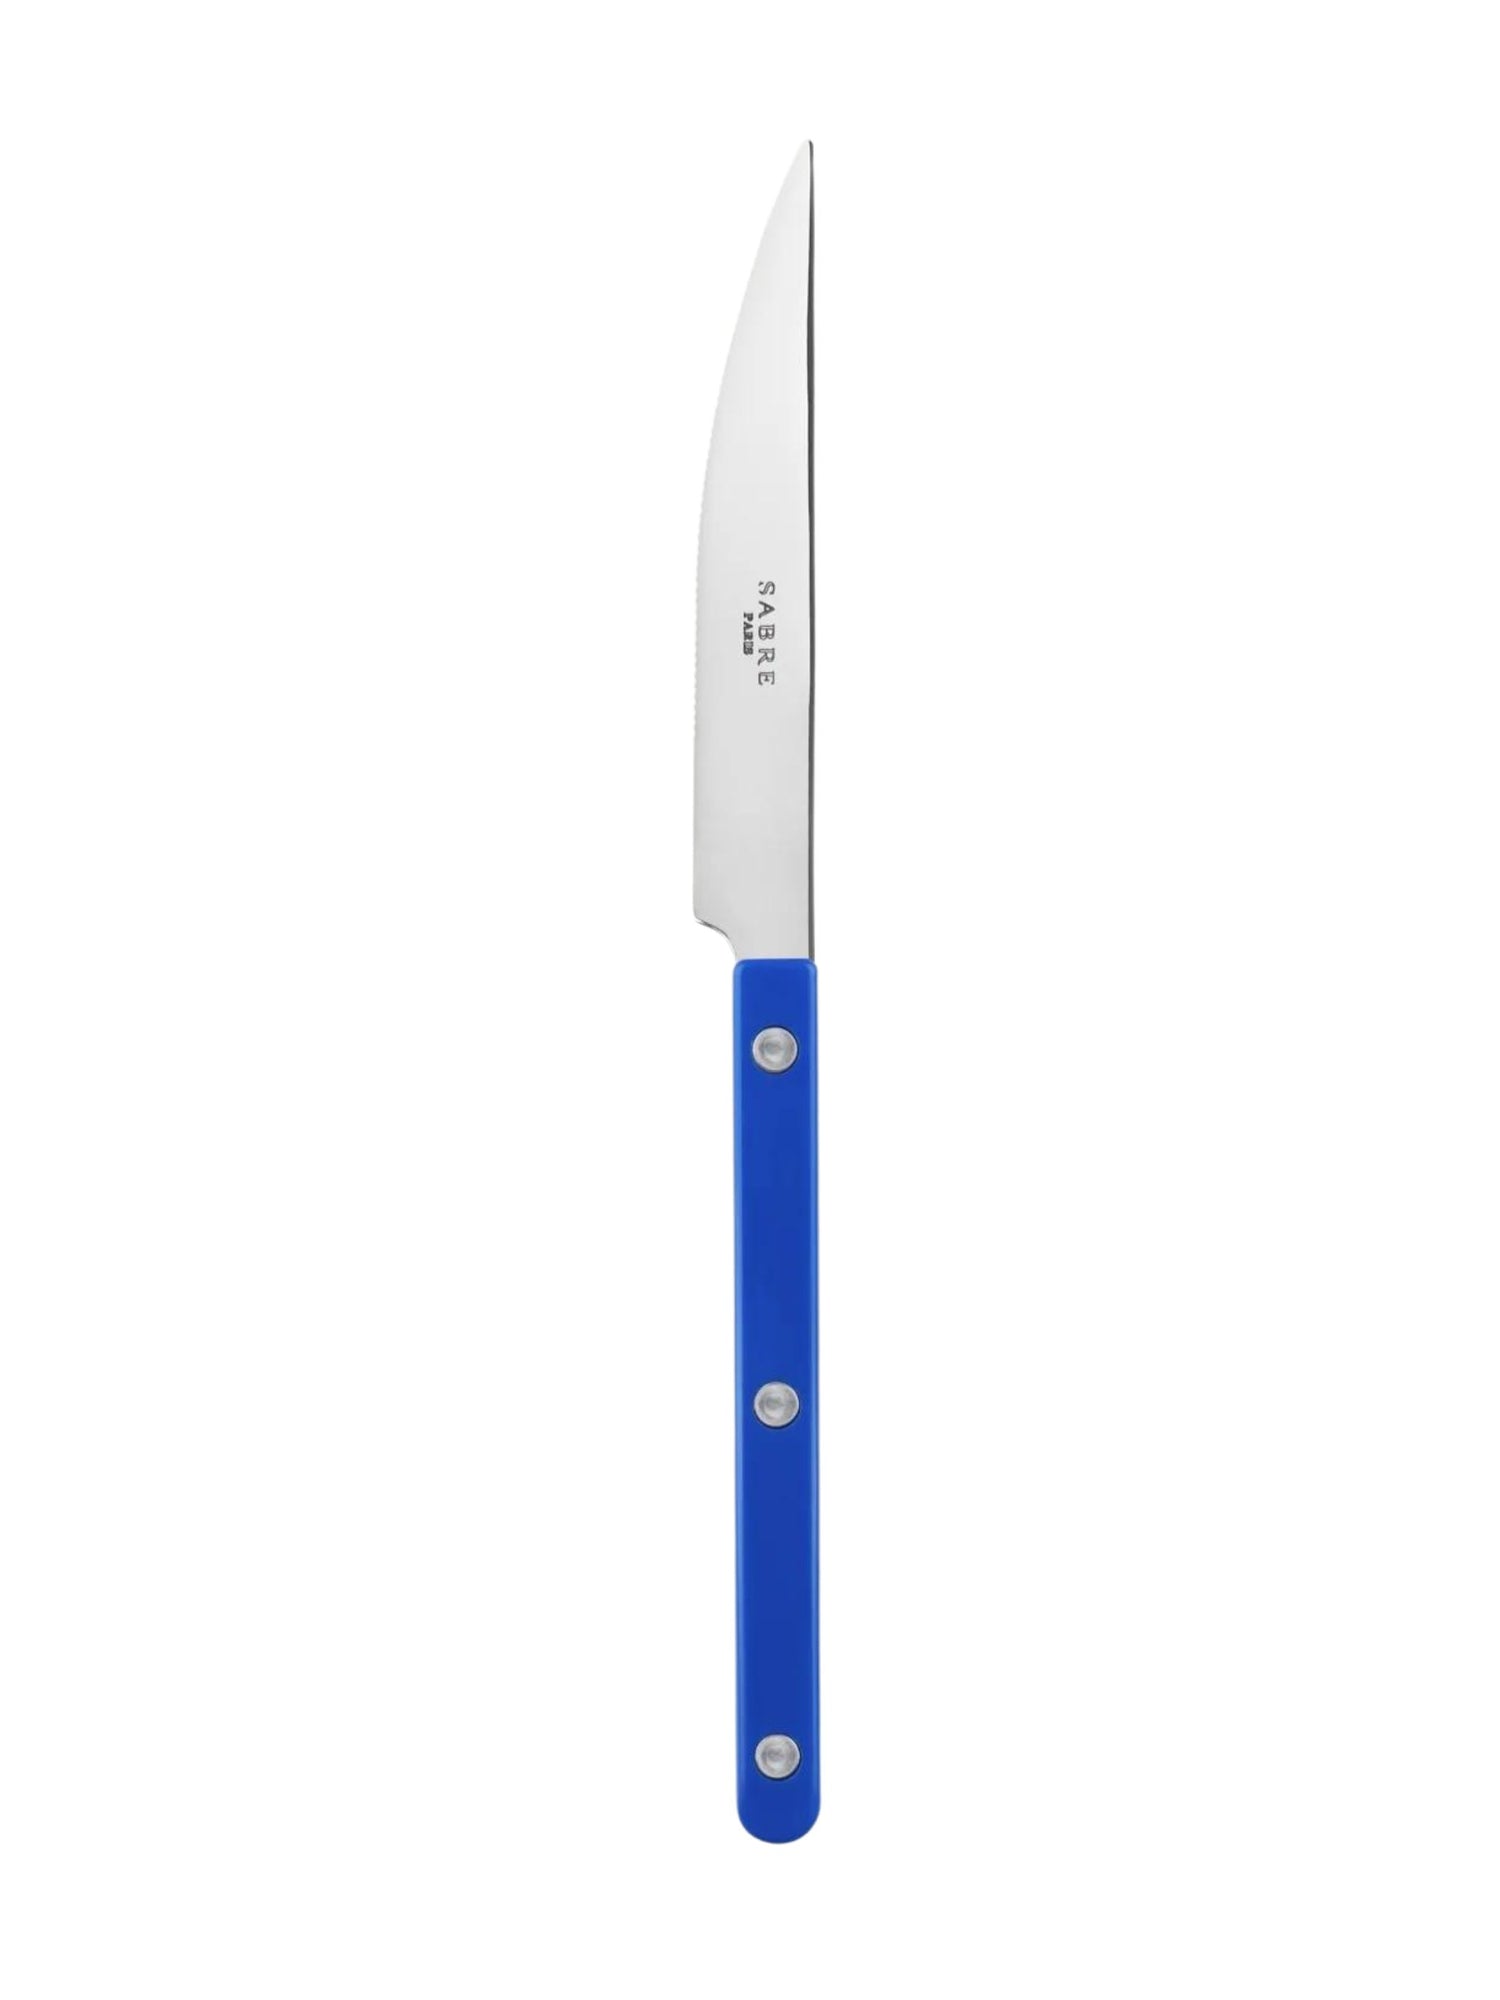 Bistrot dinner knife, solid lapis blue